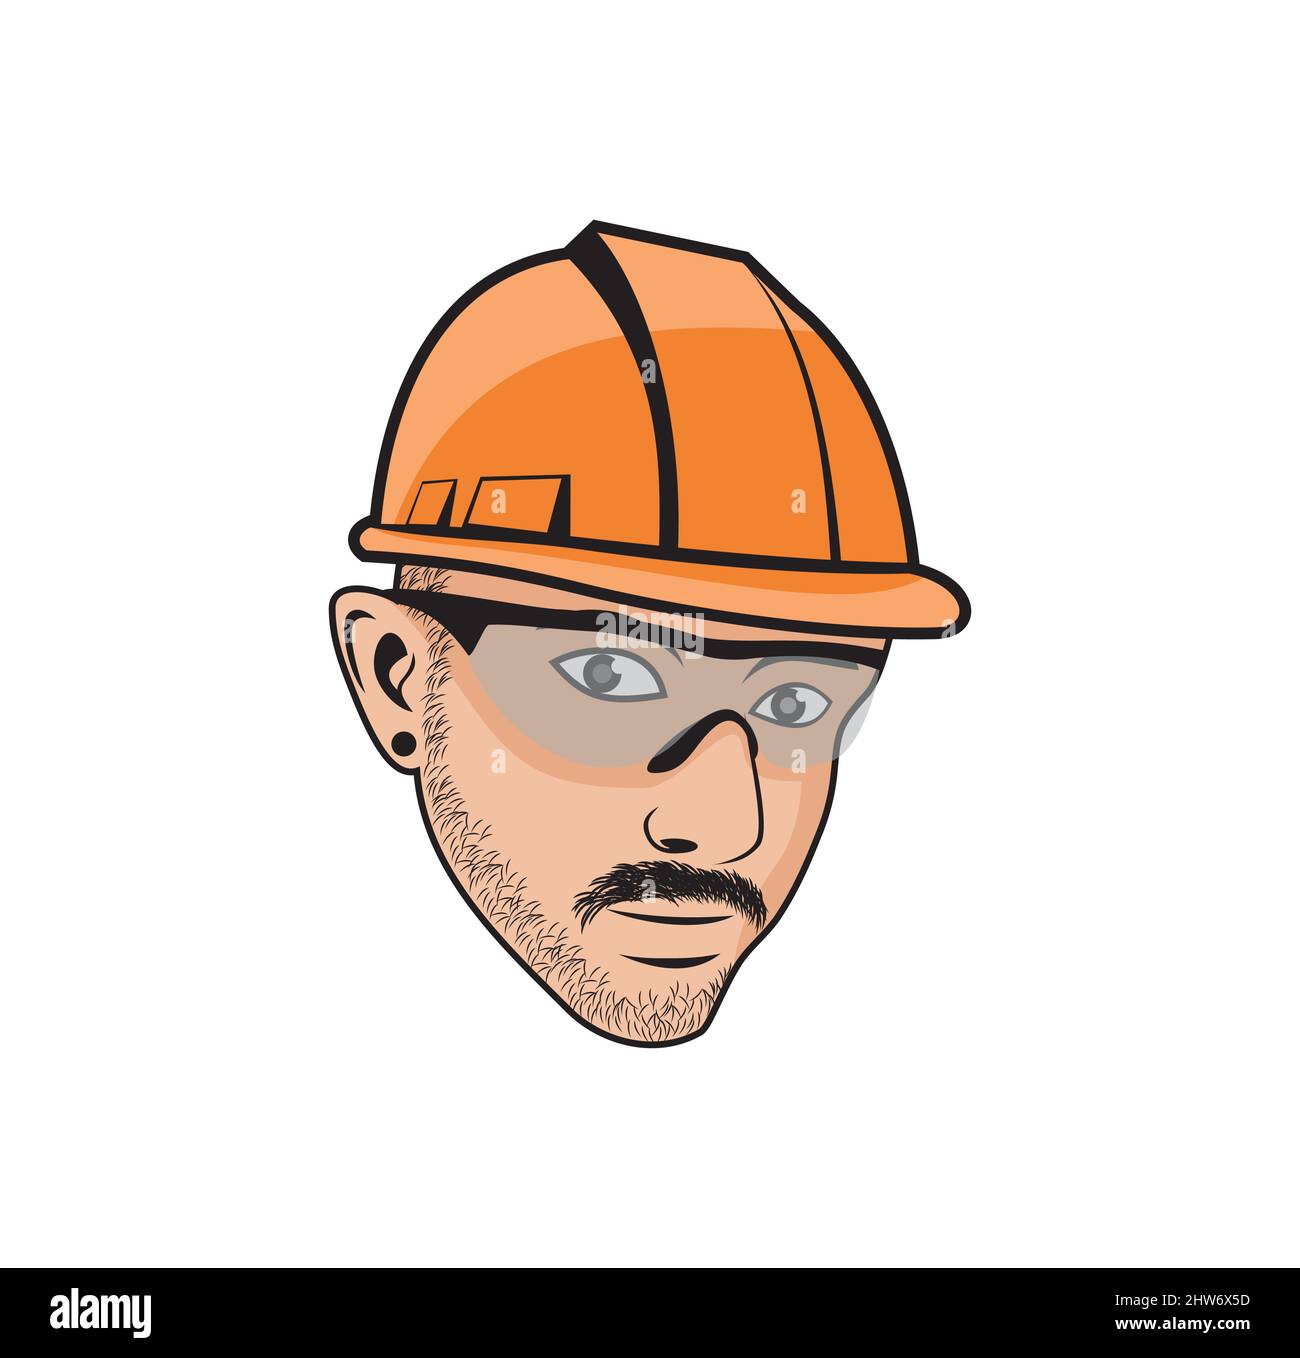 Handyman tête dessin animé personnage dessin illustration vecteur eps format , adapté à vos besoins de conception, logo, illustration, animation, etc Illustration de Vecteur